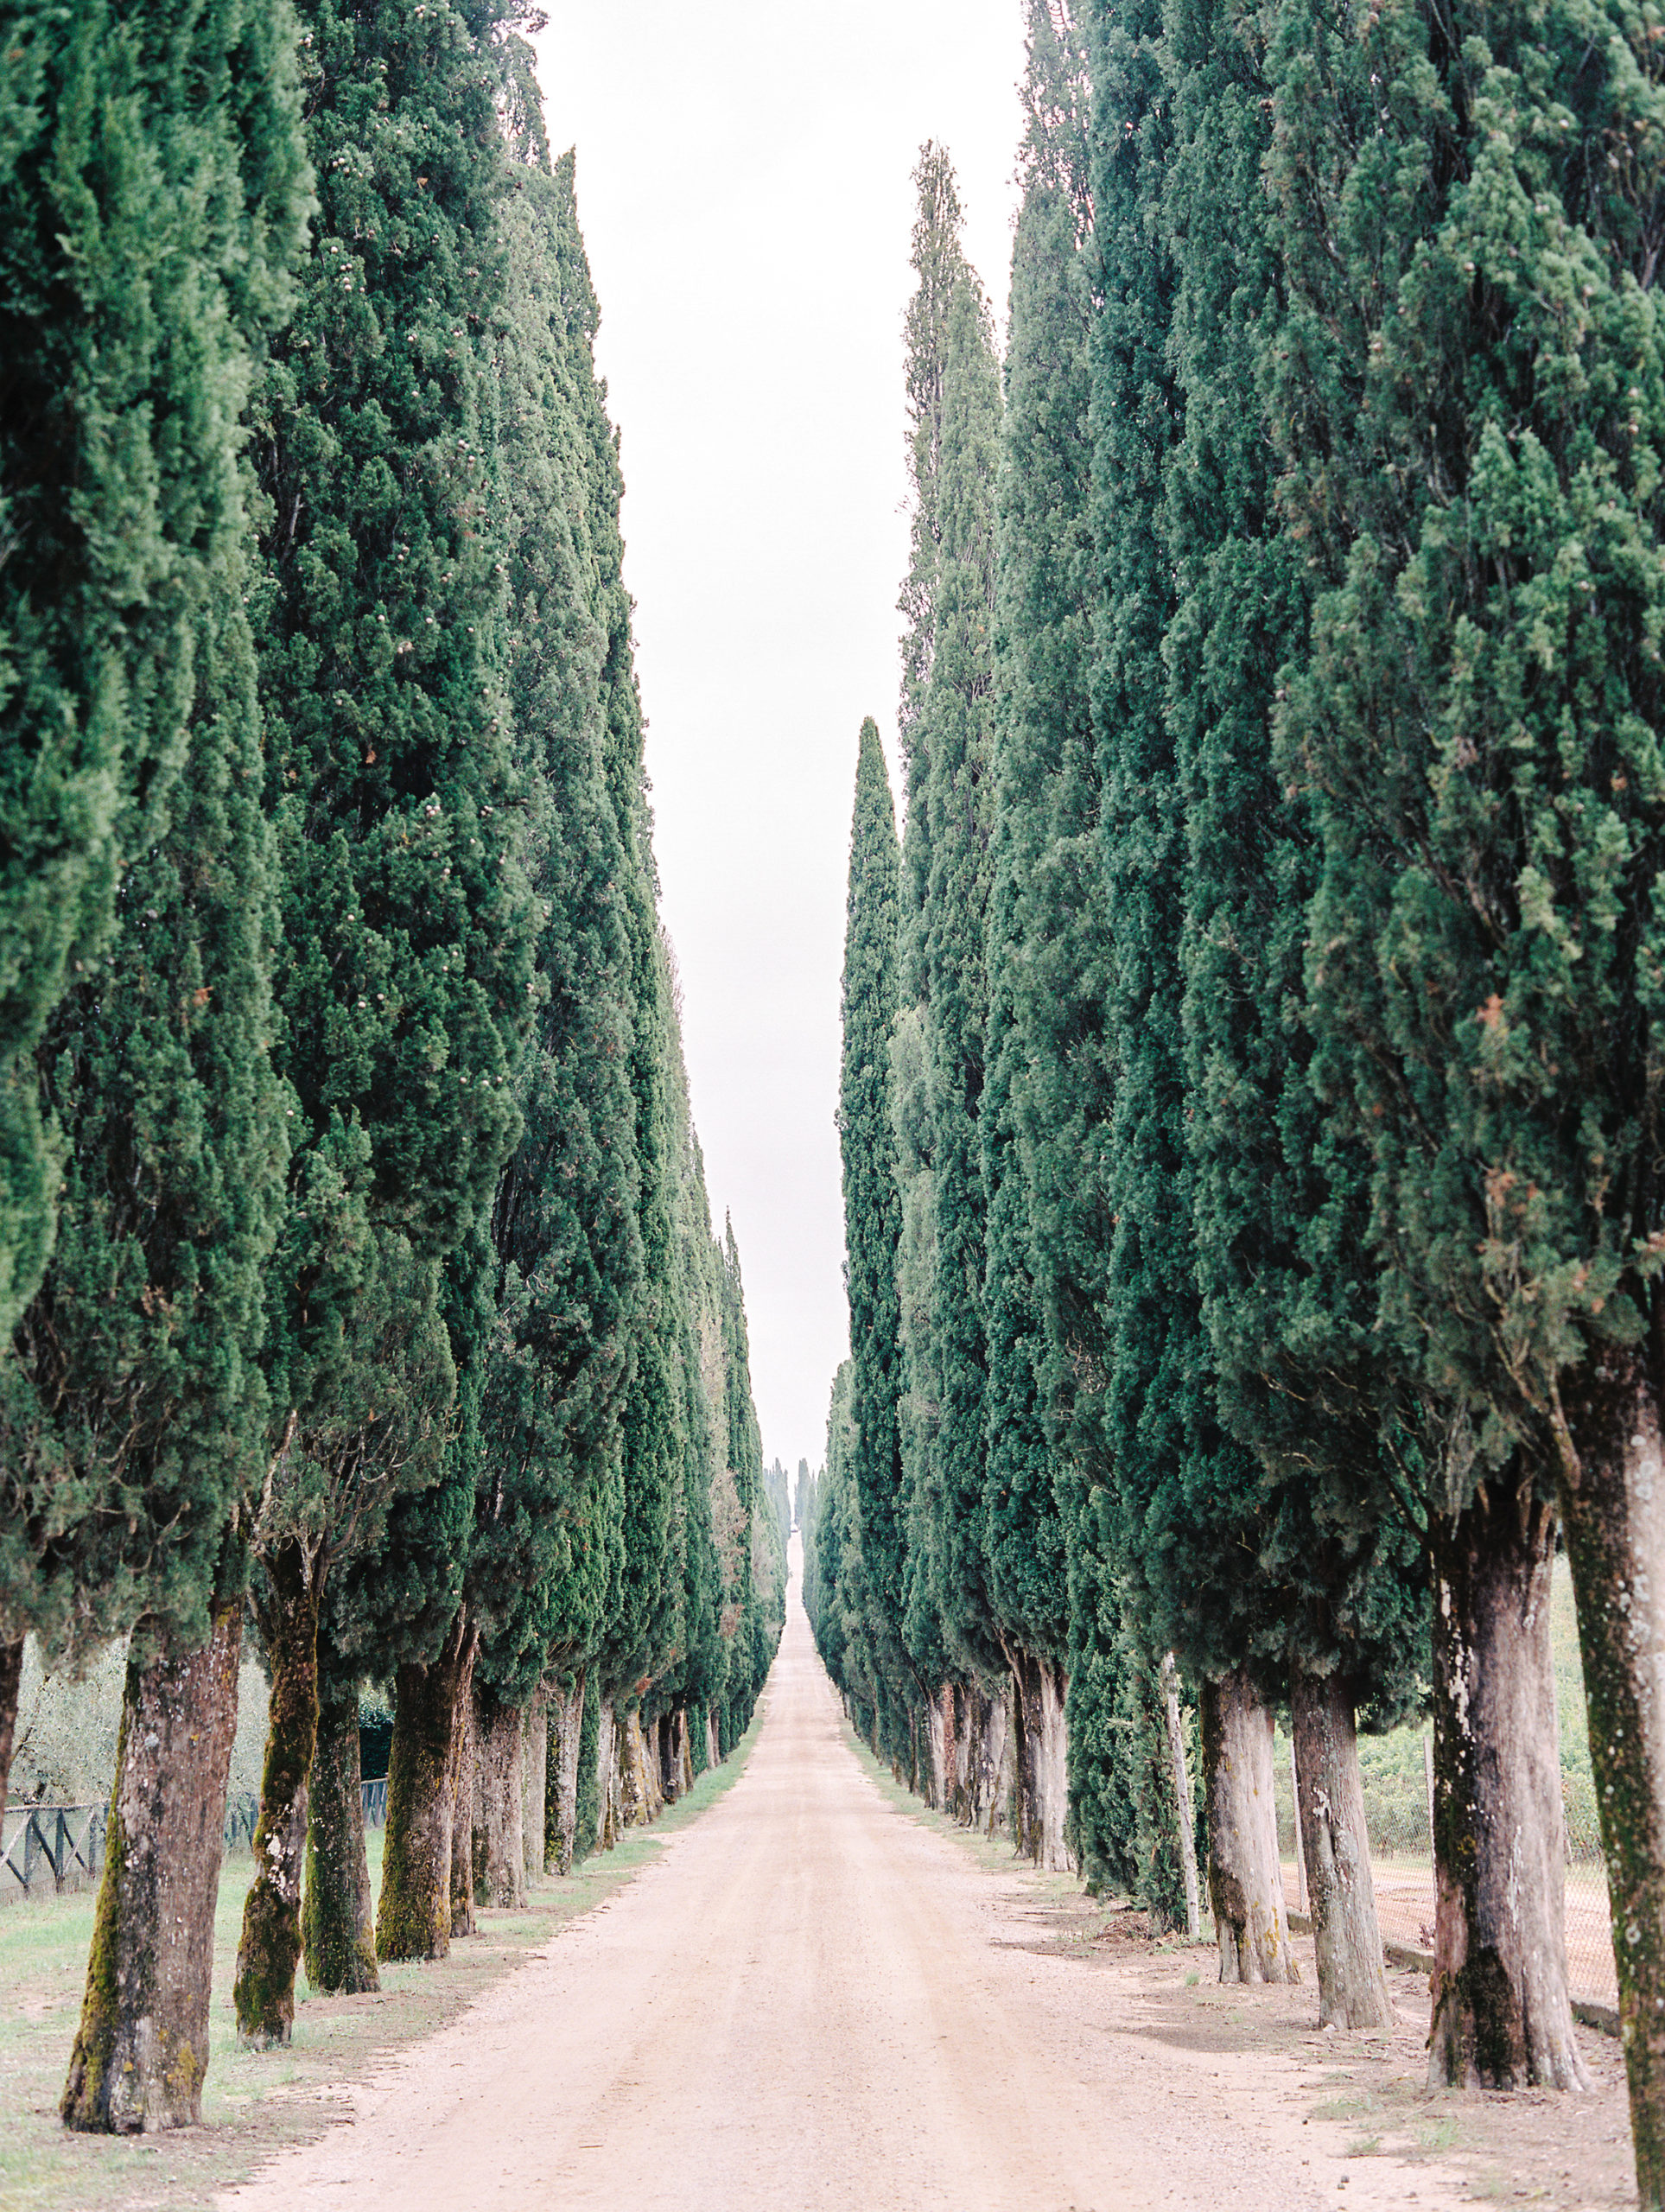 Cypress trees in Tuscany Italy.